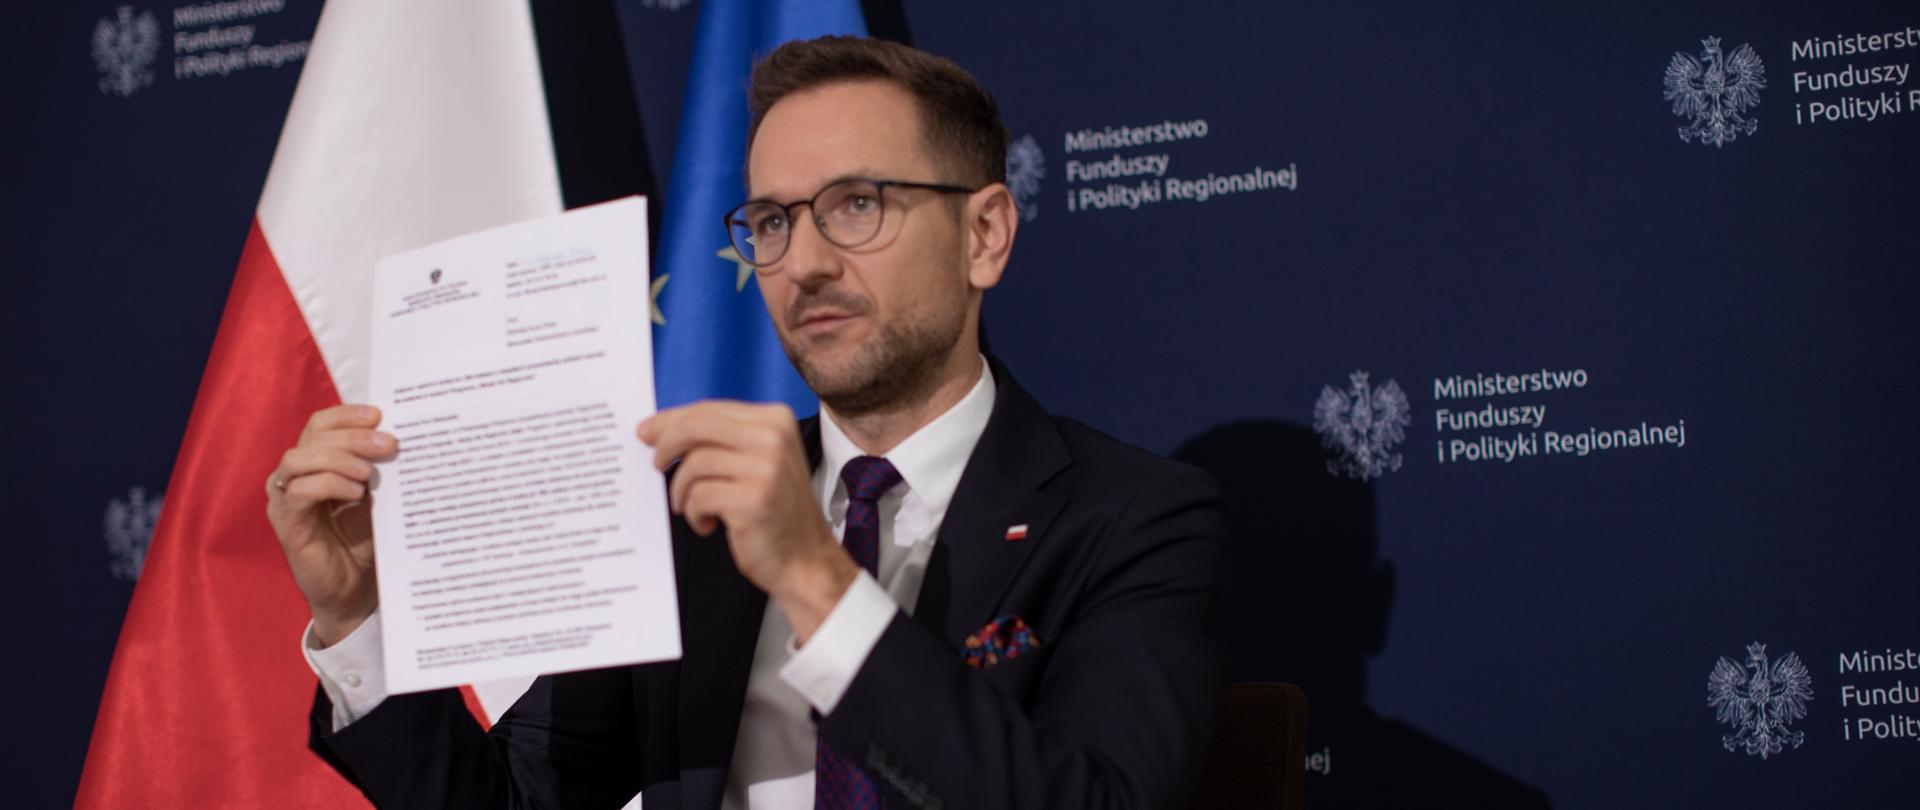 Wiceminister Waldemar Buda siedzi przy stole i prezentuje dokument. Za nim stoją: flagi polski i UE oraz ścianka MFiPR.